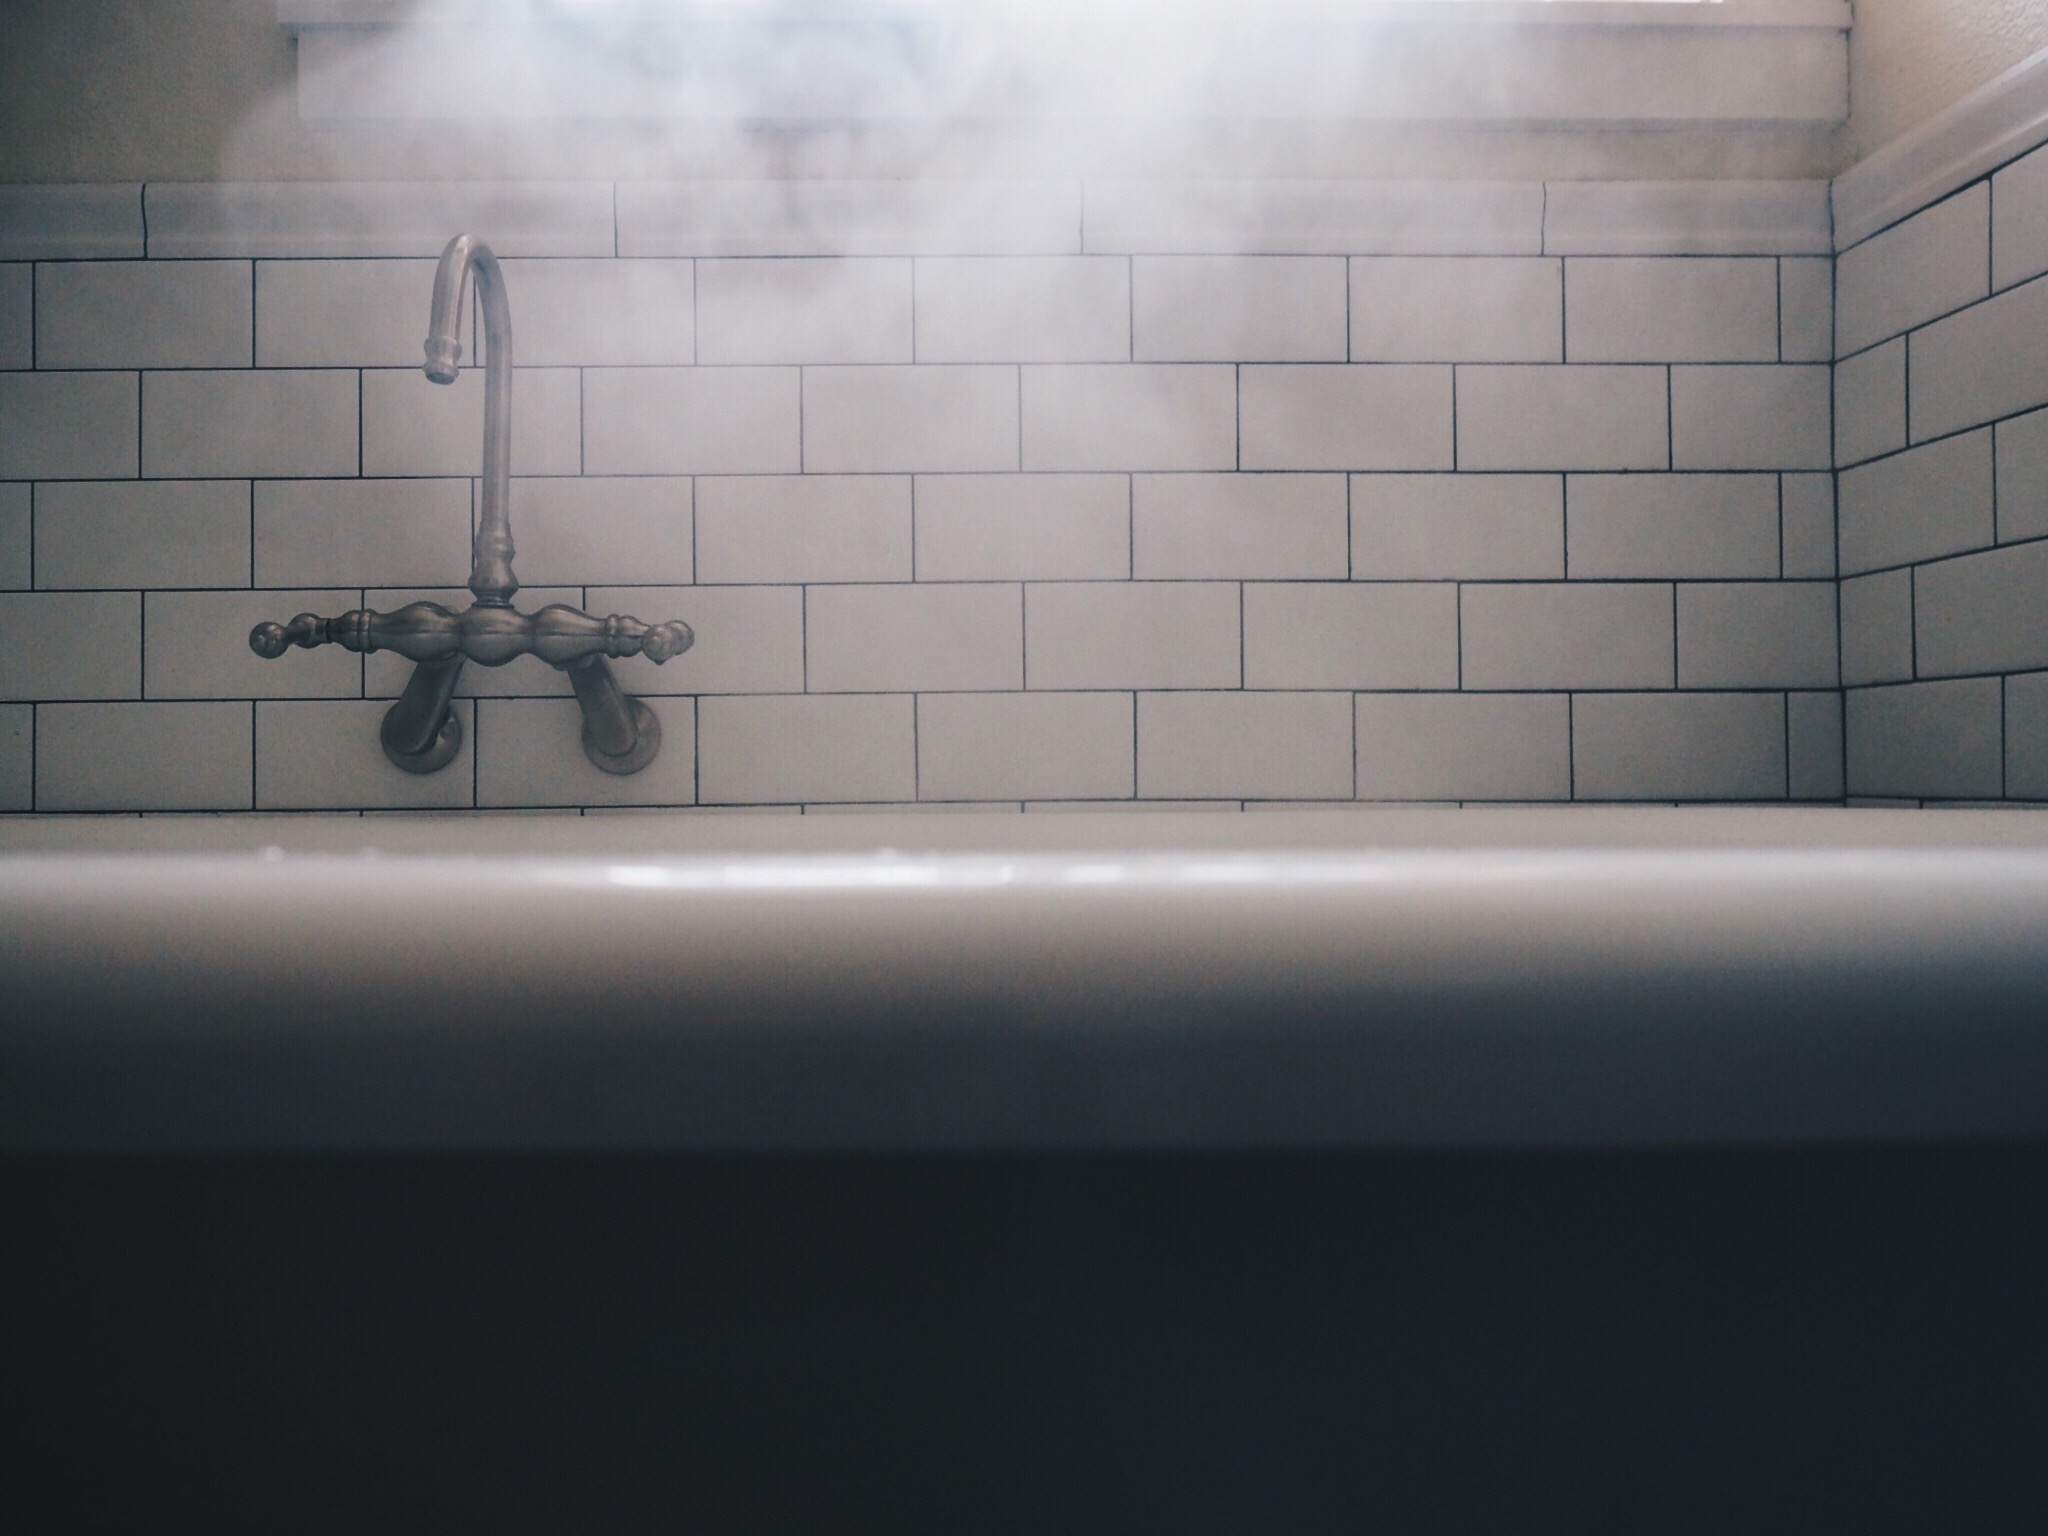 steam rising from a bath